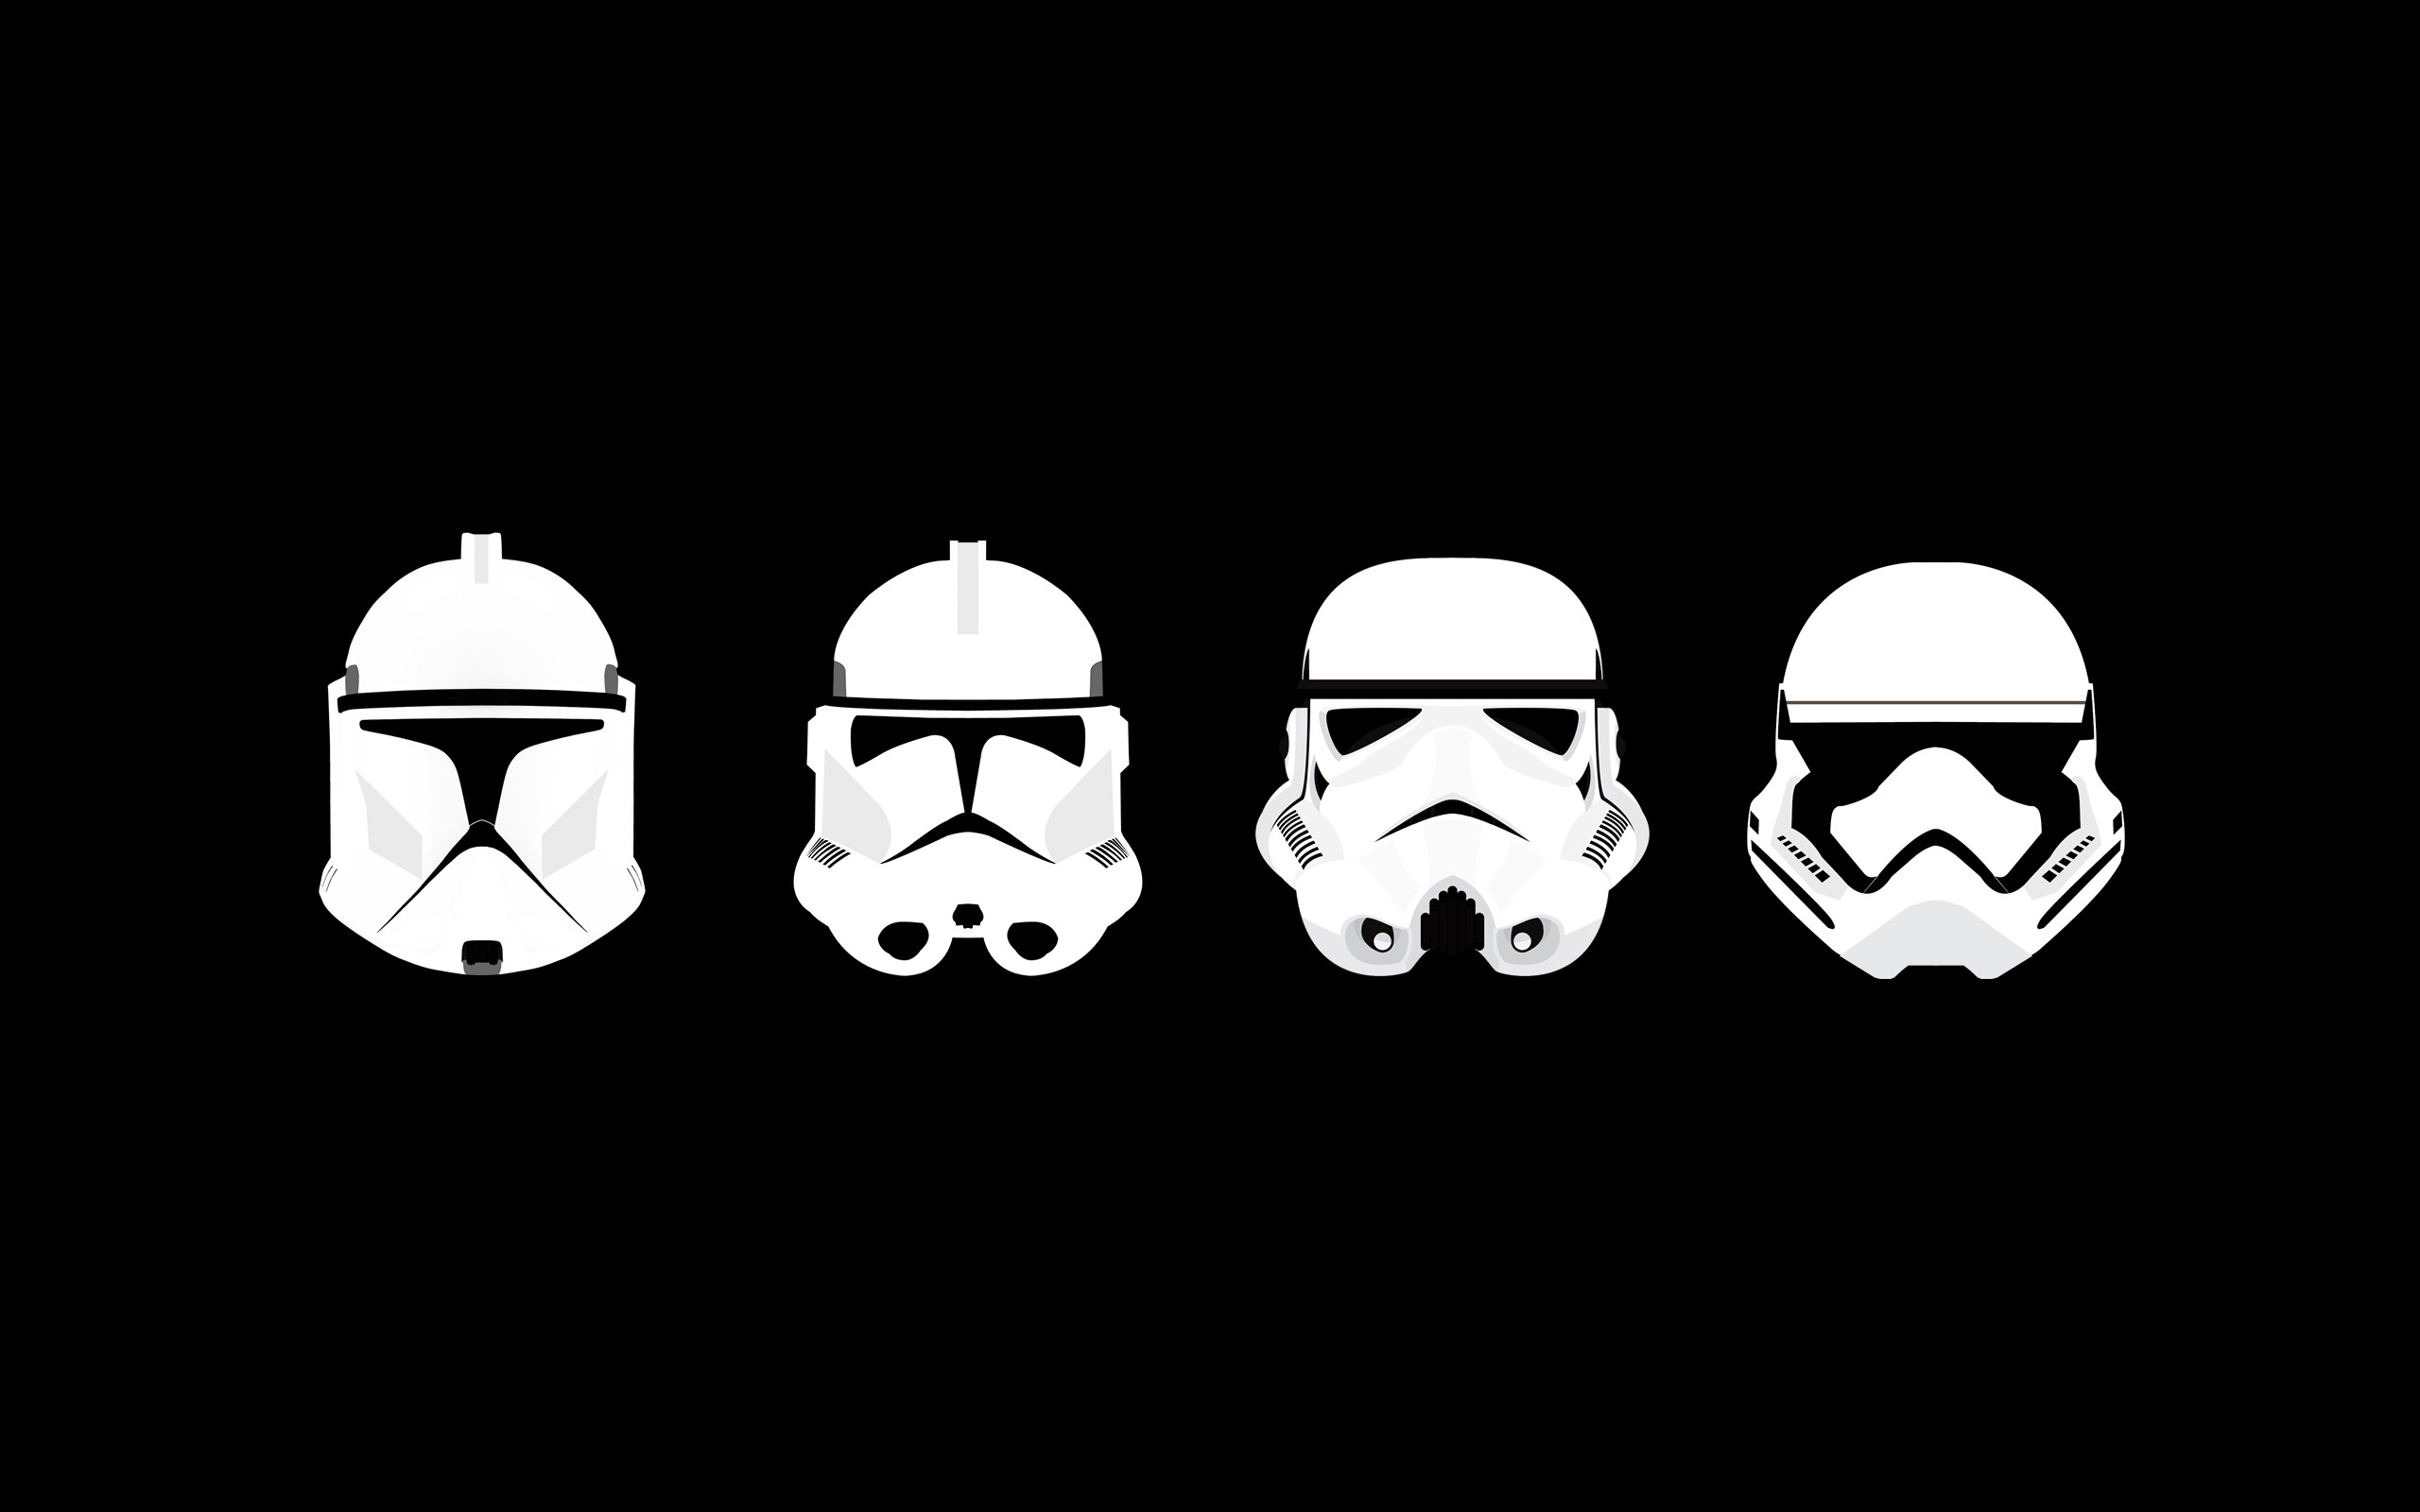 fond d'écran stormtrooper hd,casque,coiffures,noir et blanc,personnage fictif,illustration